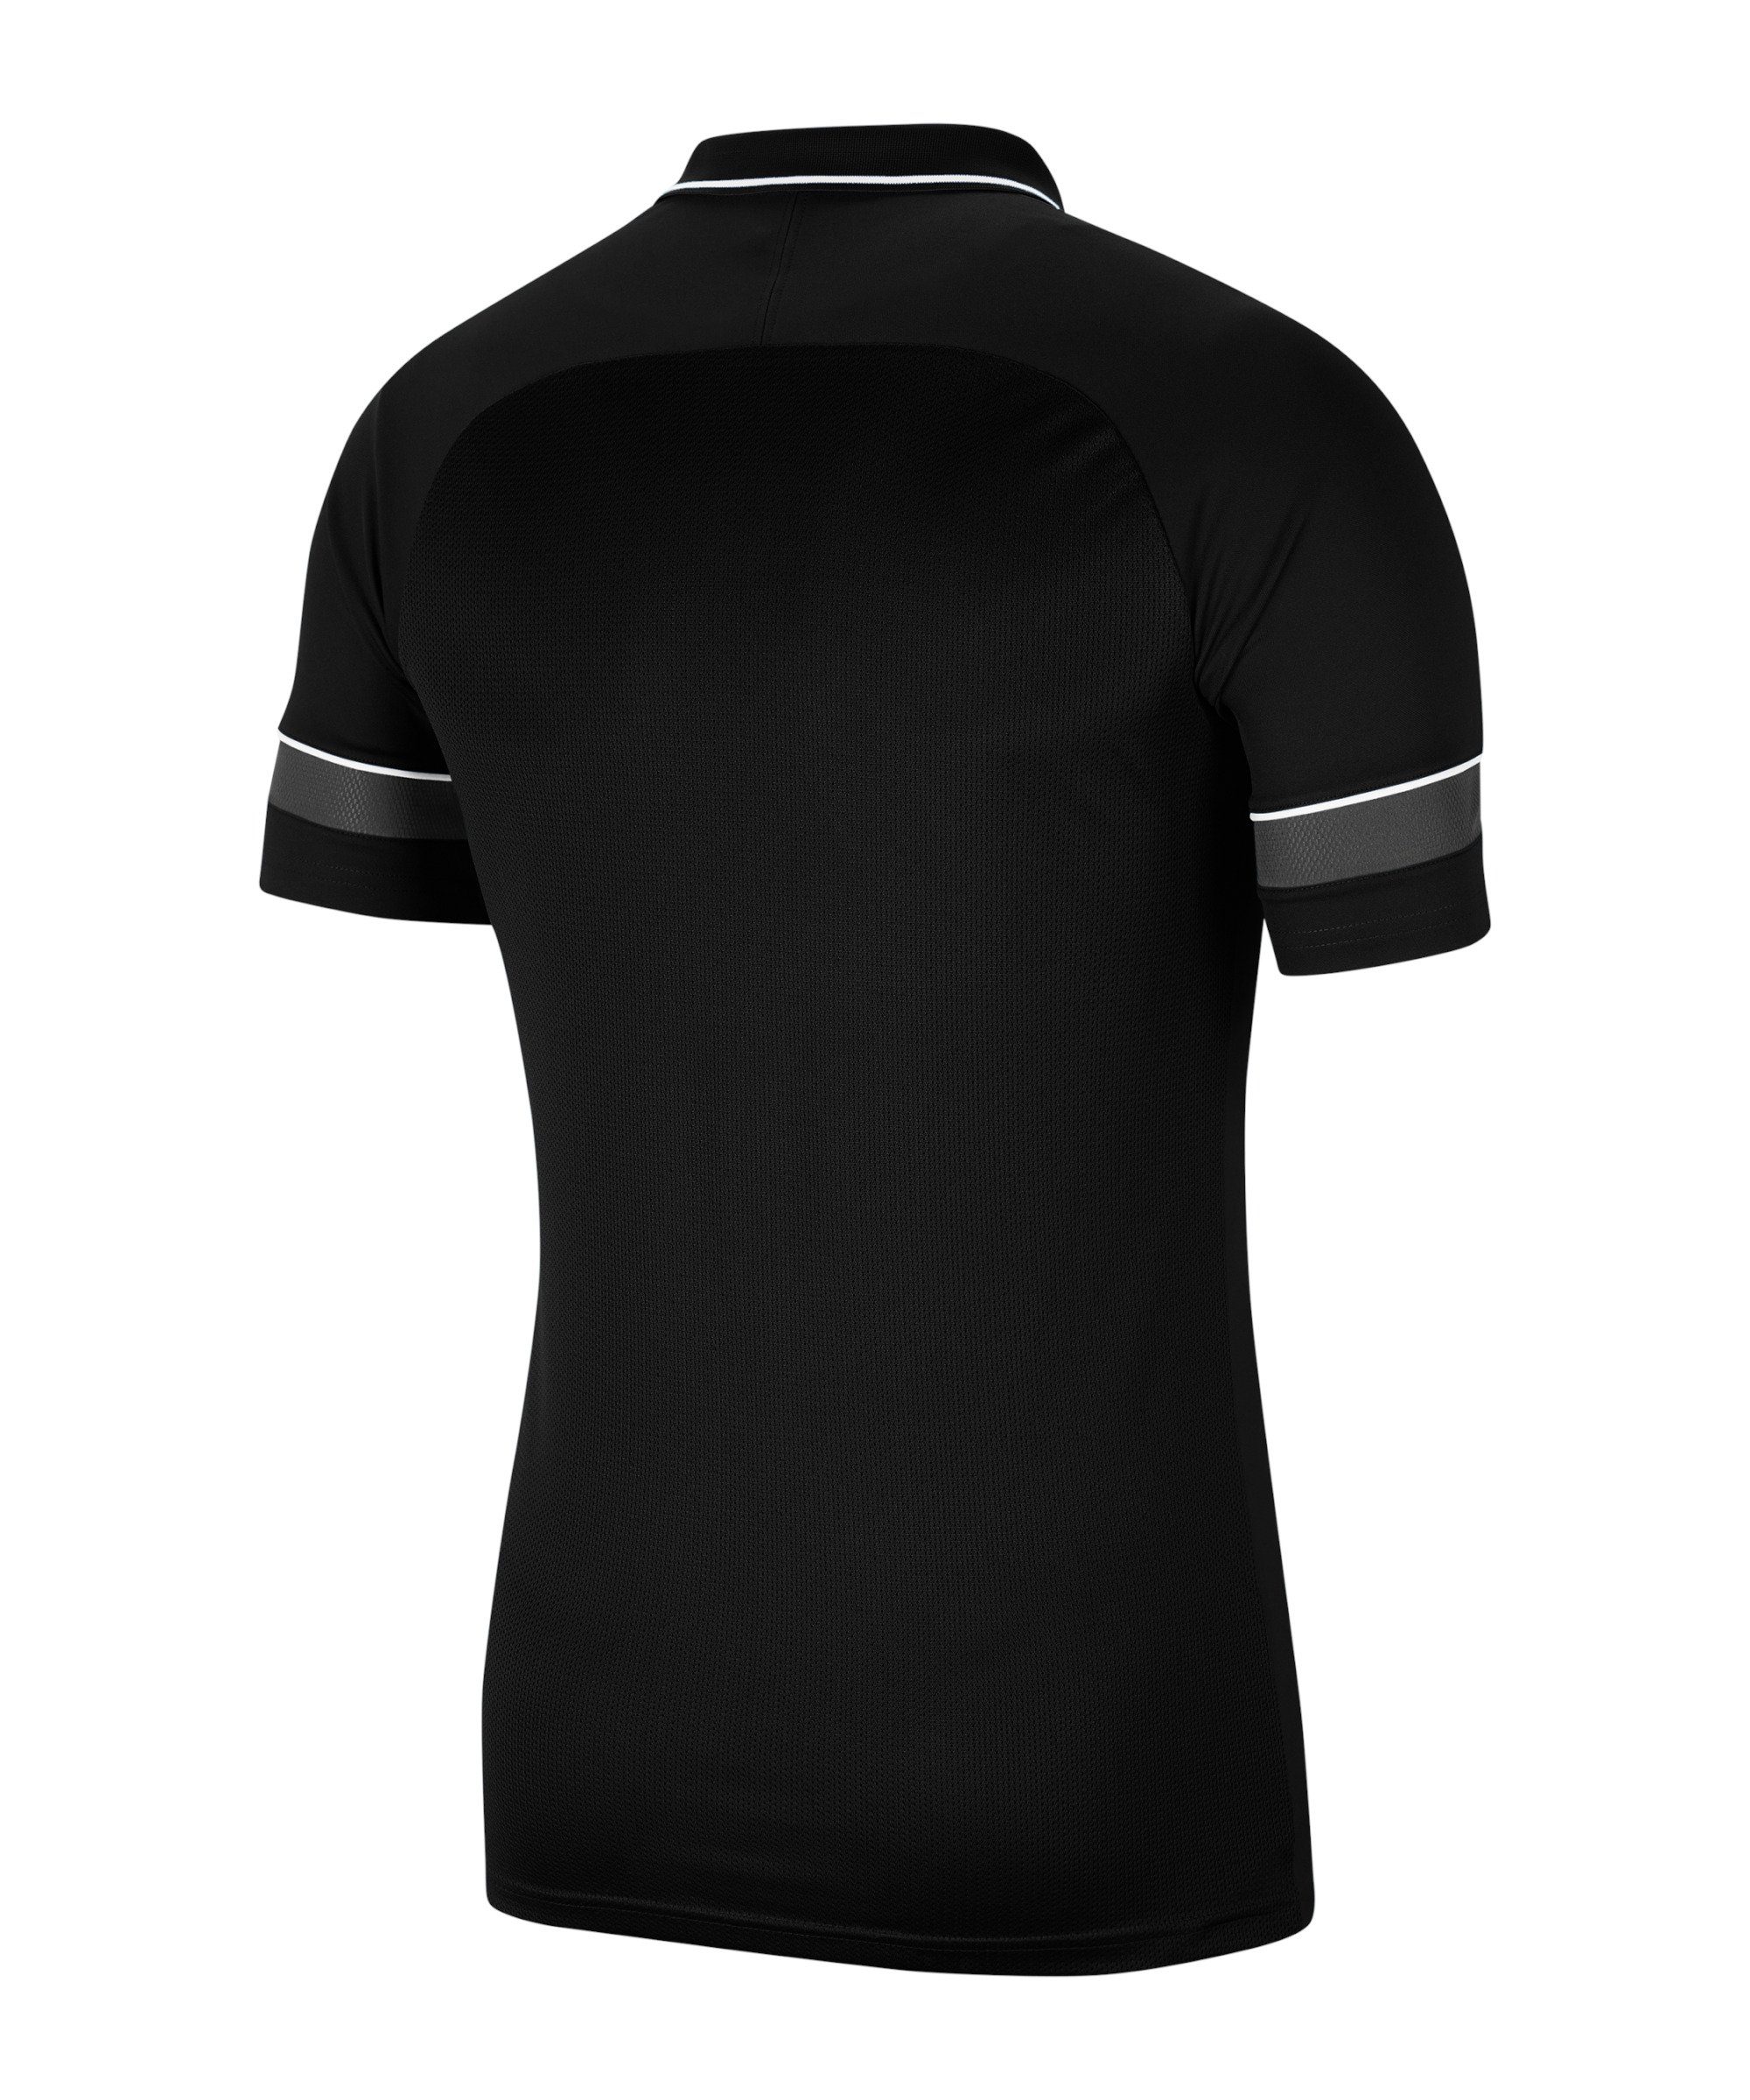 Academy default T-Shirt 21 schwarzweissgrau Nike Poloshirt